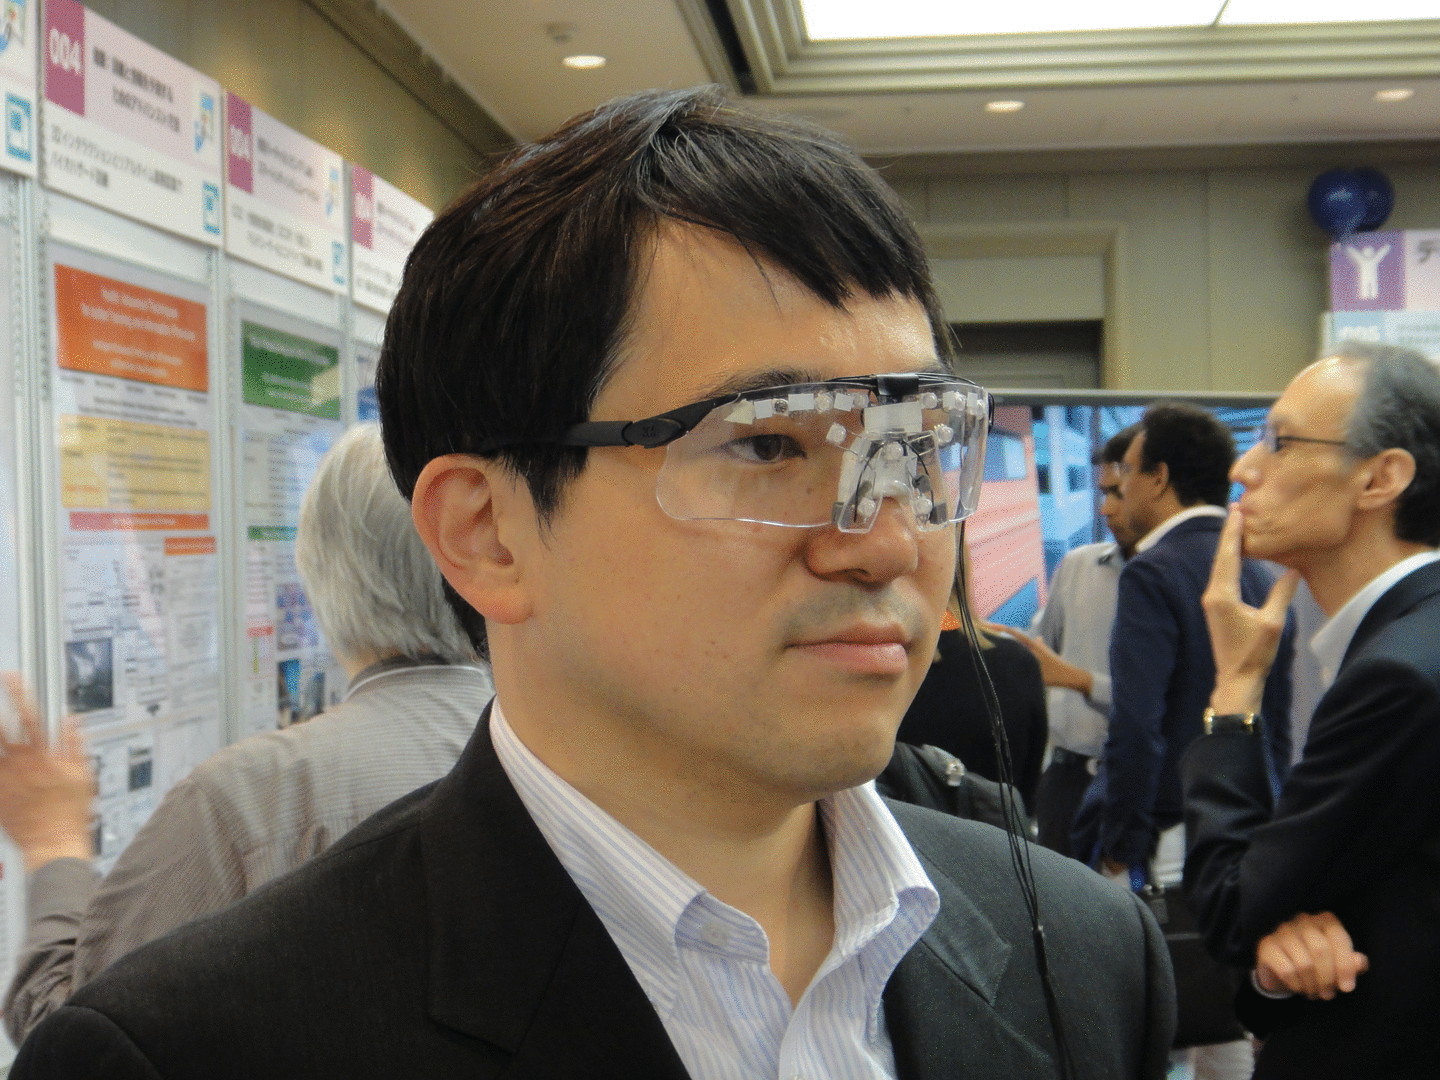 Японские разработчики. Очки с распознаванием лиц. Японские разработки. Очки для защиты лица от распознавания. Anti face recognition Glasses.